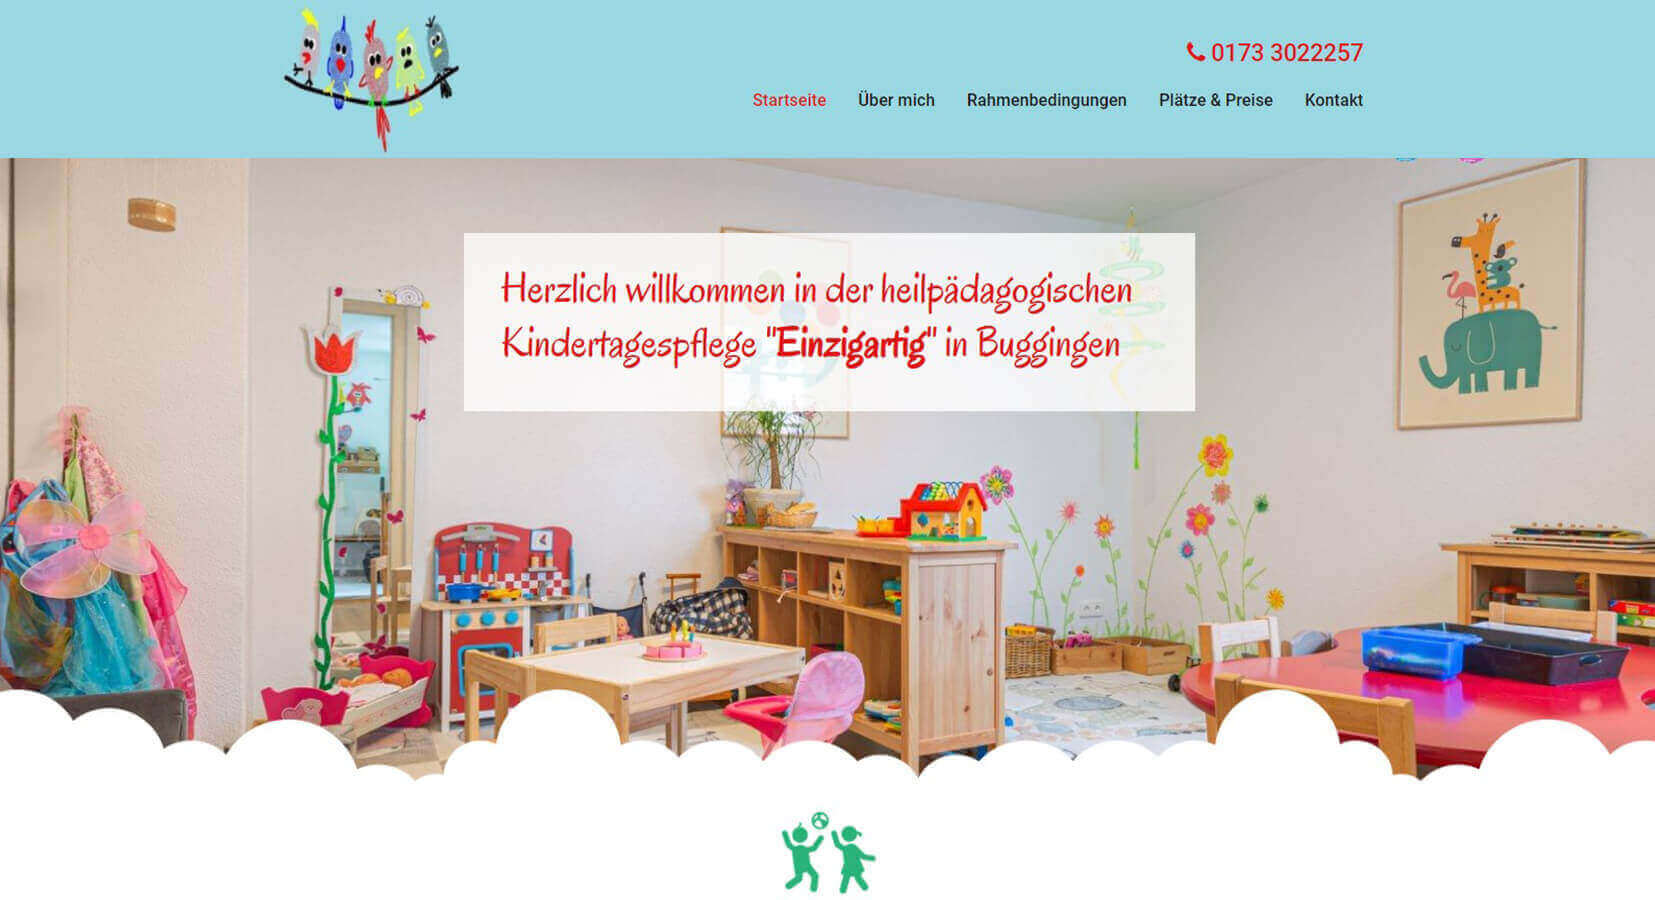 homepage-basic-referenz-heilpaedagogische-kindertagespflege